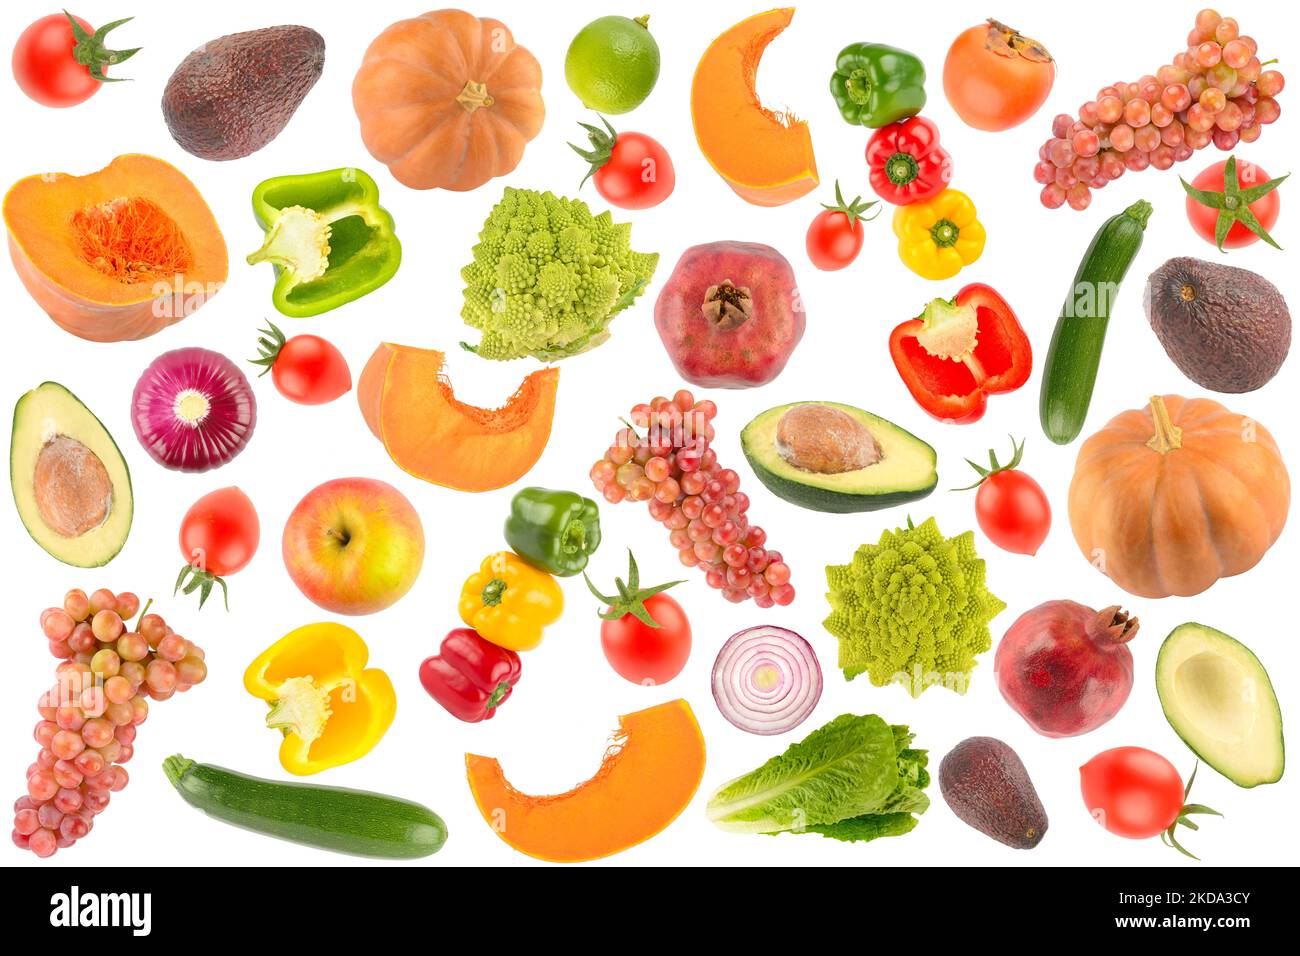 Fond de légumes, fruits et baies colorés sur blanc Banque D'Images